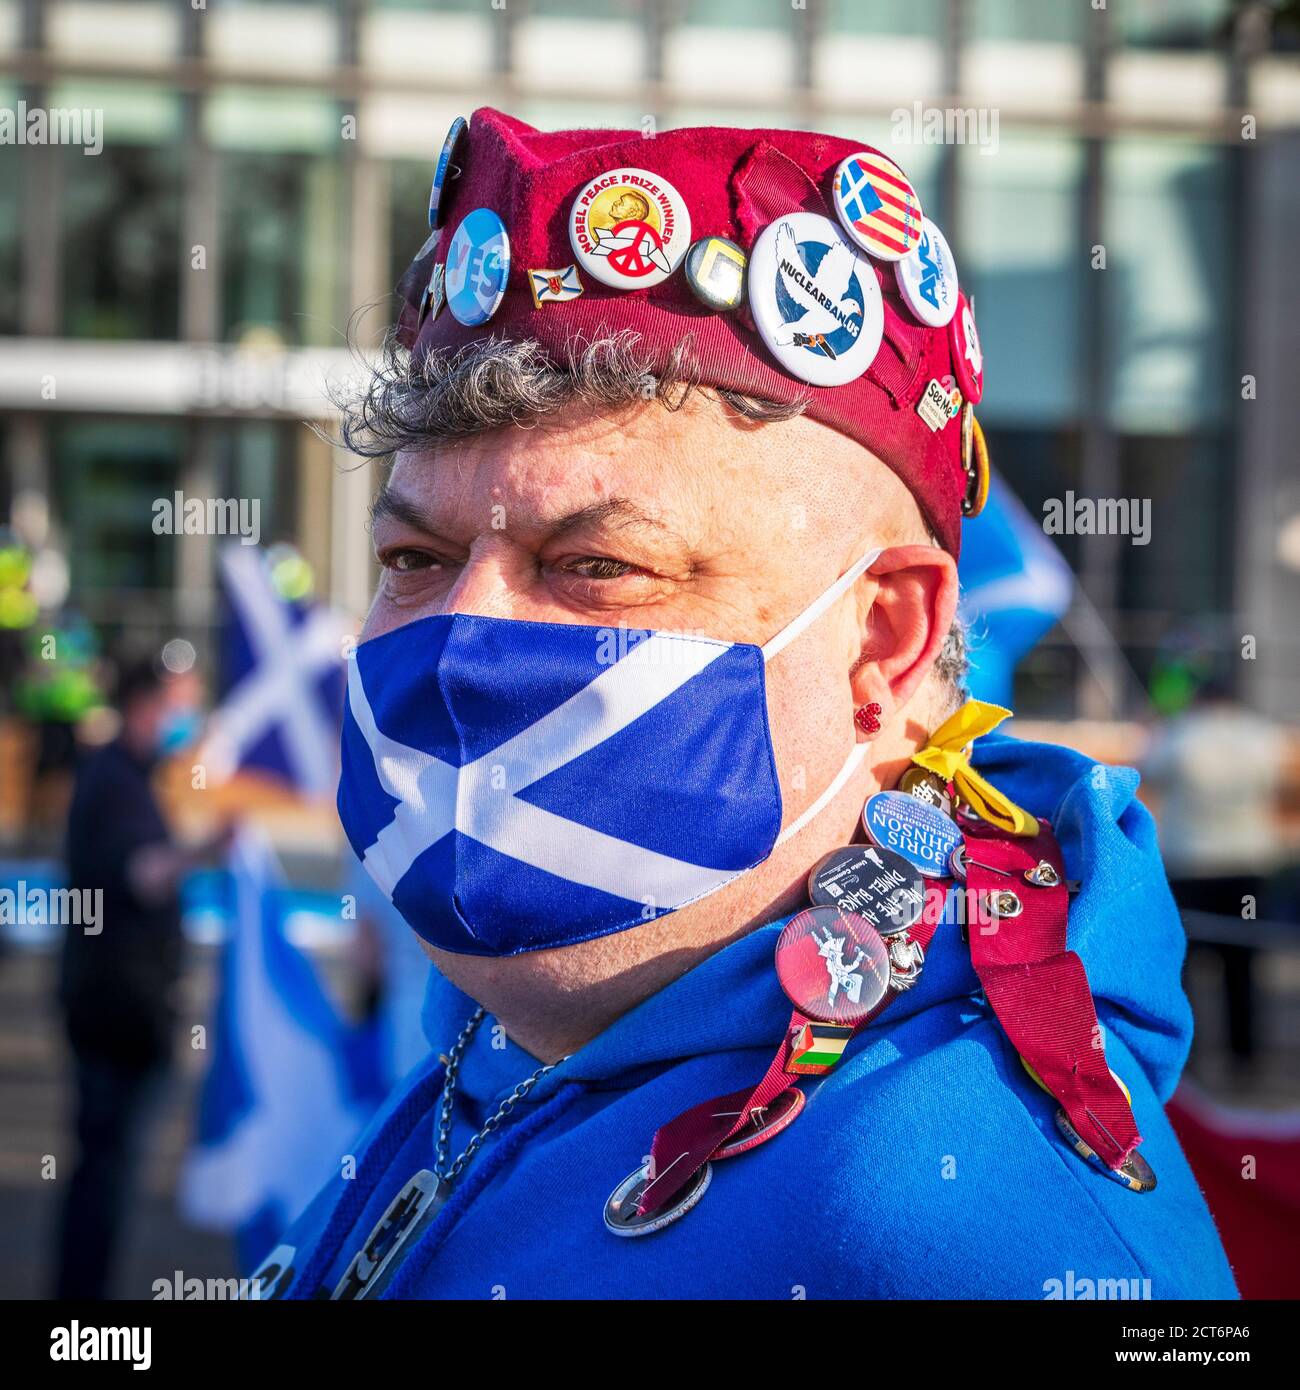 Scozzese sostenitore dell'indipendenza con una maschera di salvataggio una berrata di glengarry con badge pro indipendenza, presa ad un raduno politico di indipendenza, Foto Stock